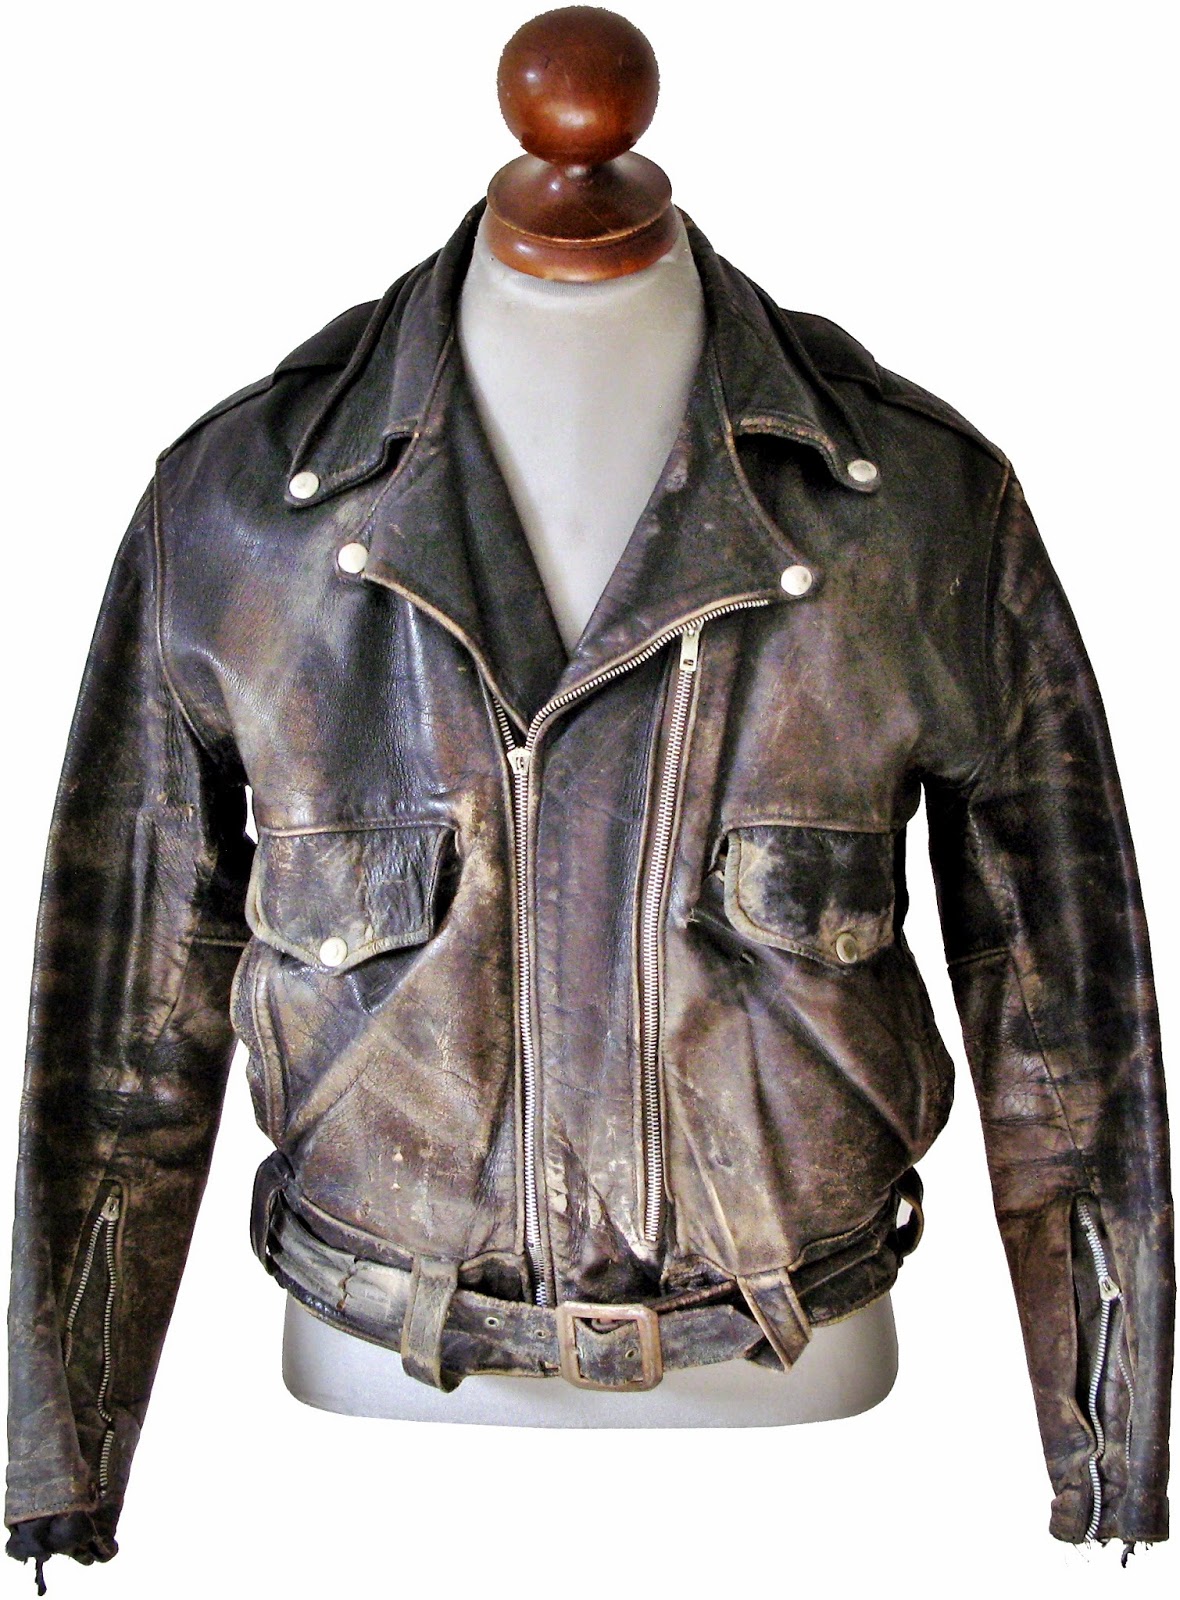 1950s Hercules motorcycle jacket